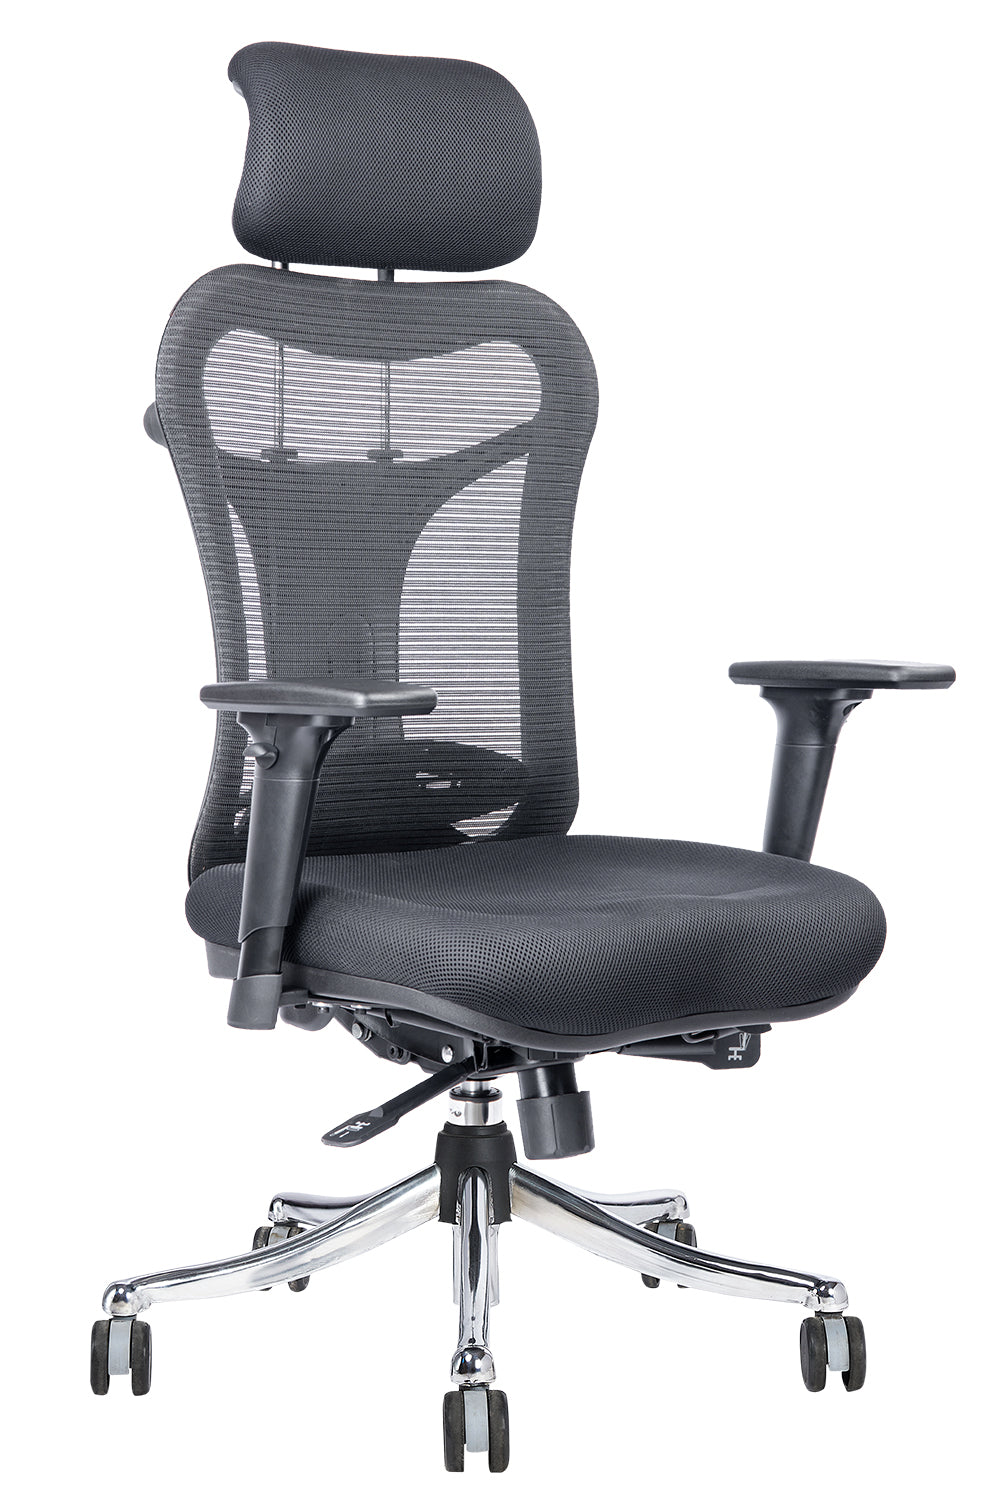 Oscar High Back Chrome Base Executive Chair With Cushion Seat And 3D Armrest  - Black